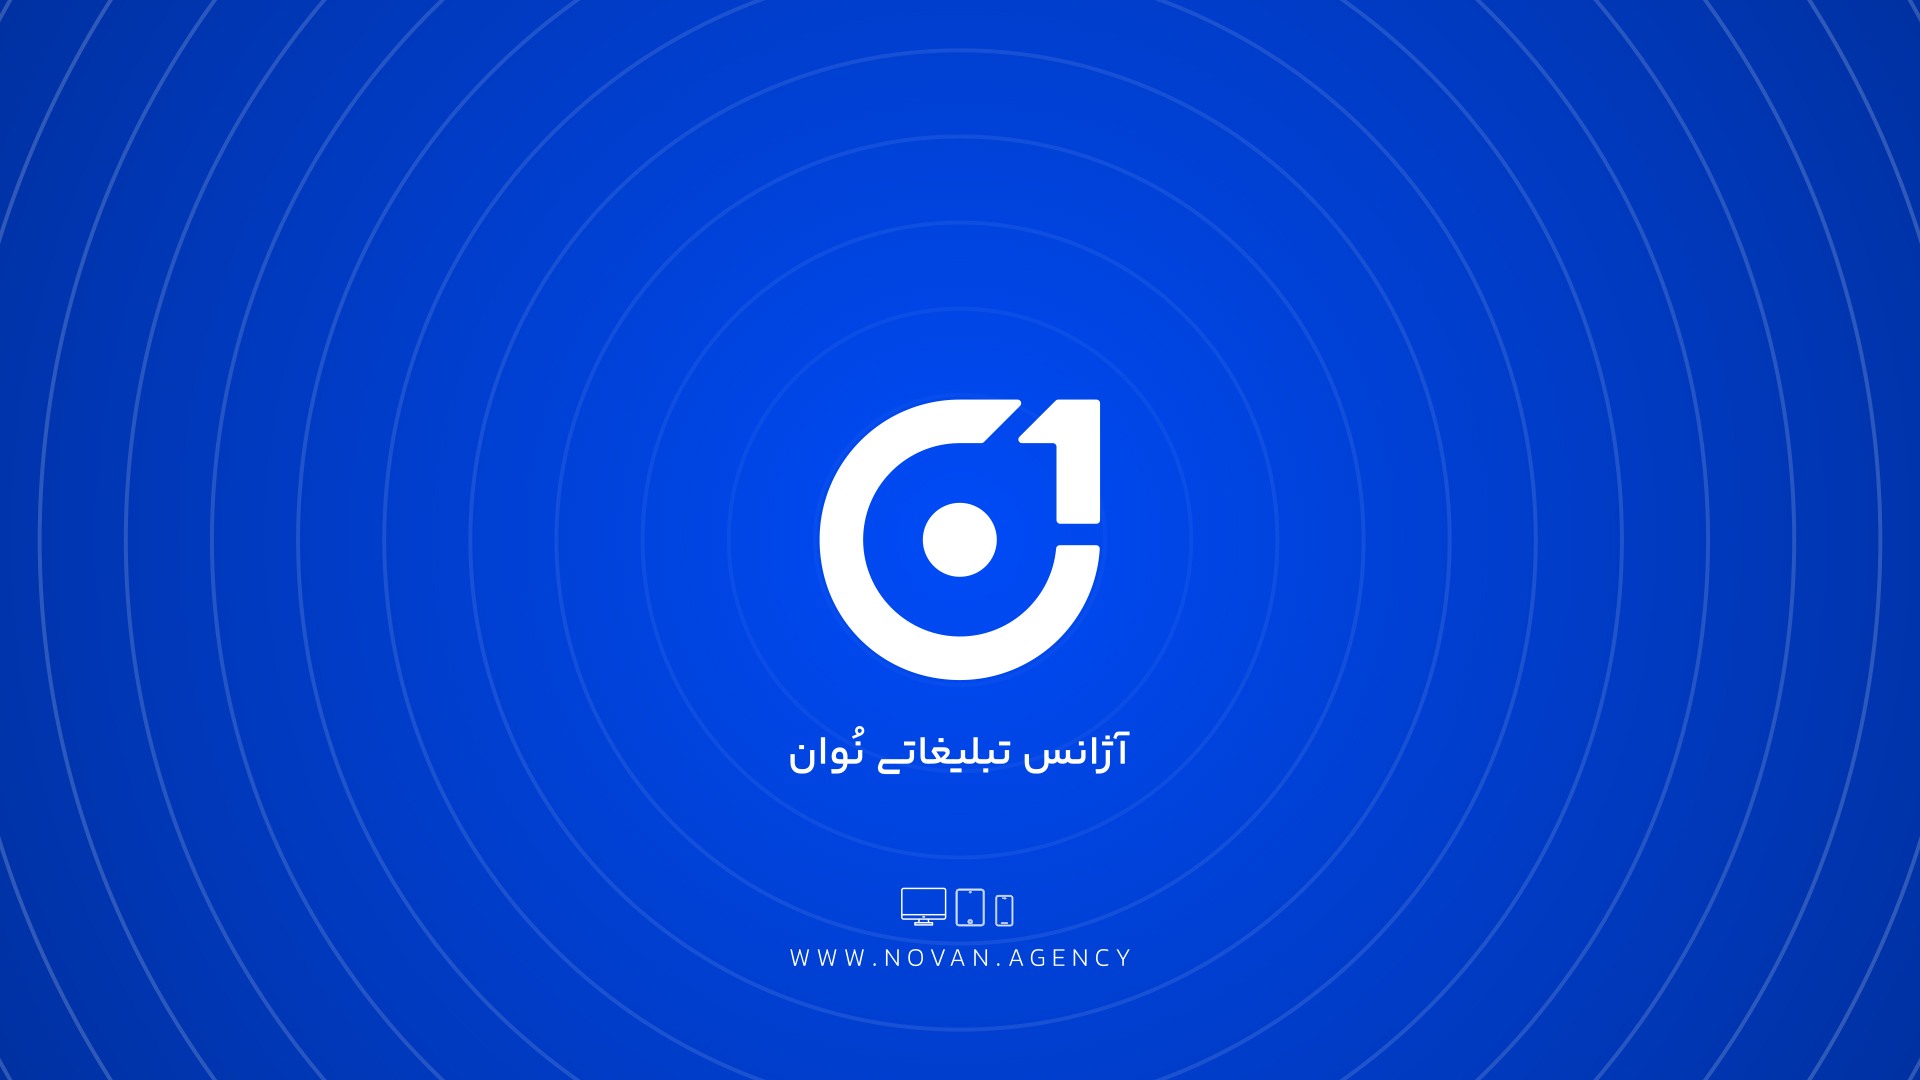 تیزر تبلیغاتی در اصفهان |ساخت تیزر تبلیغاتی در اصفهان